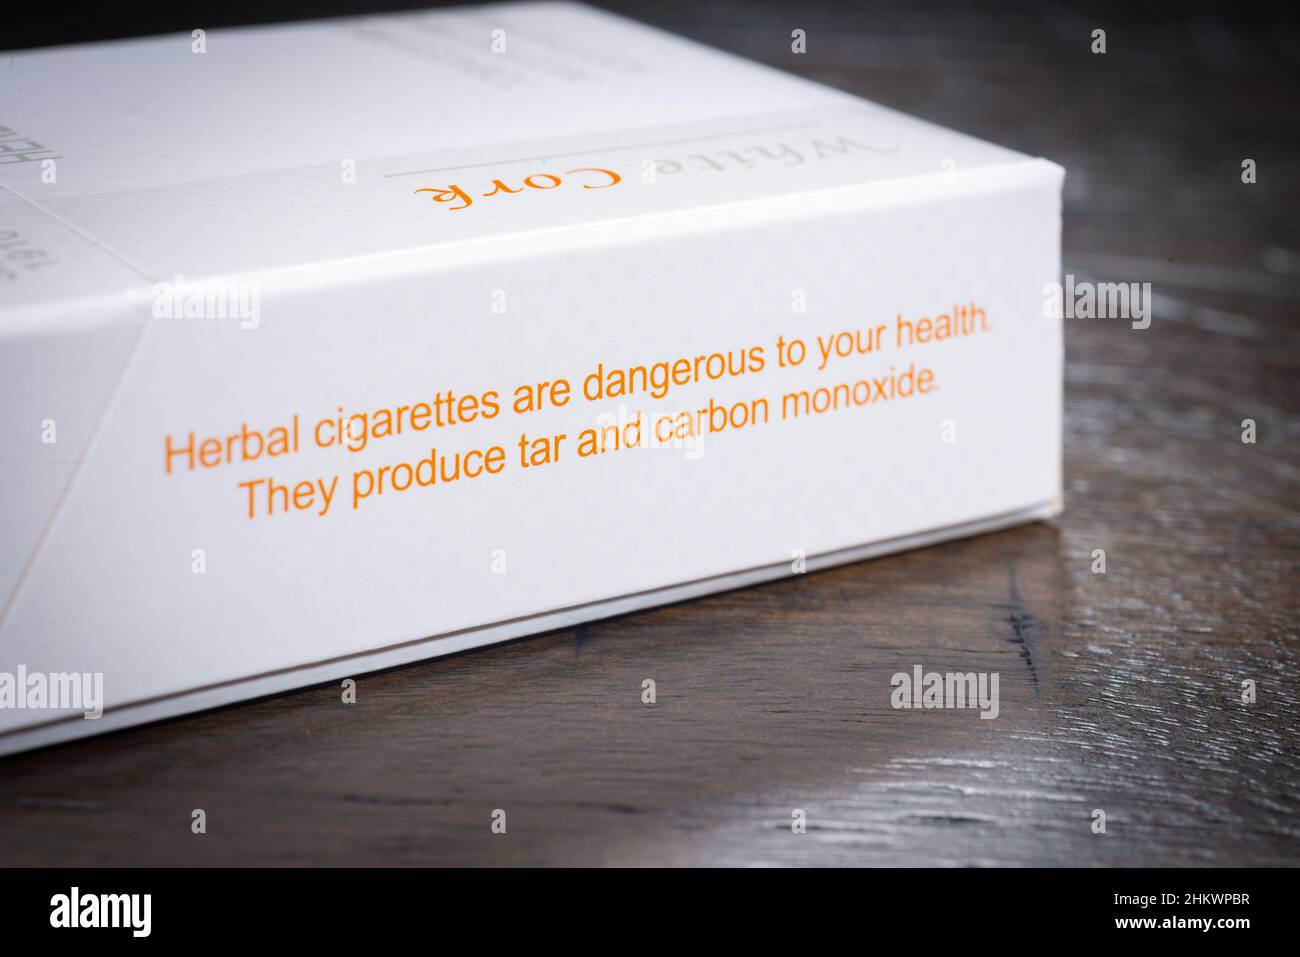 SAINT CLOUD, MINNESOTA - 5 FÉVRIER 2022 : un paquet de cigarettes à base de plantes de marque Honeyrose est posé sur une table en bois. Banque D'Images